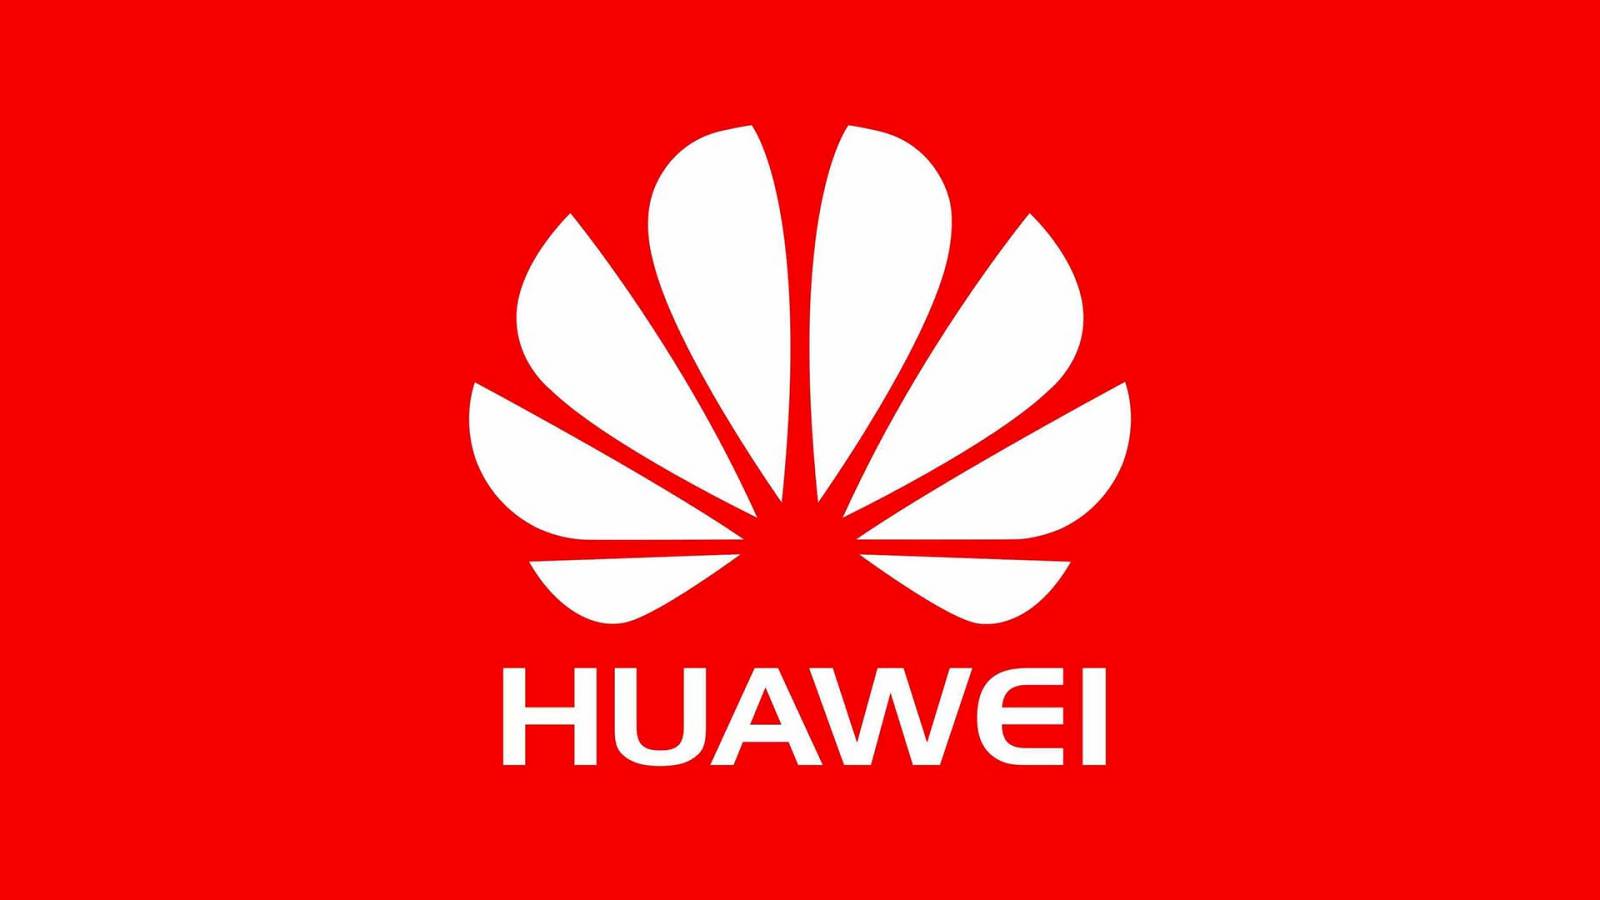 Huawei Motiv UMILIT Trump